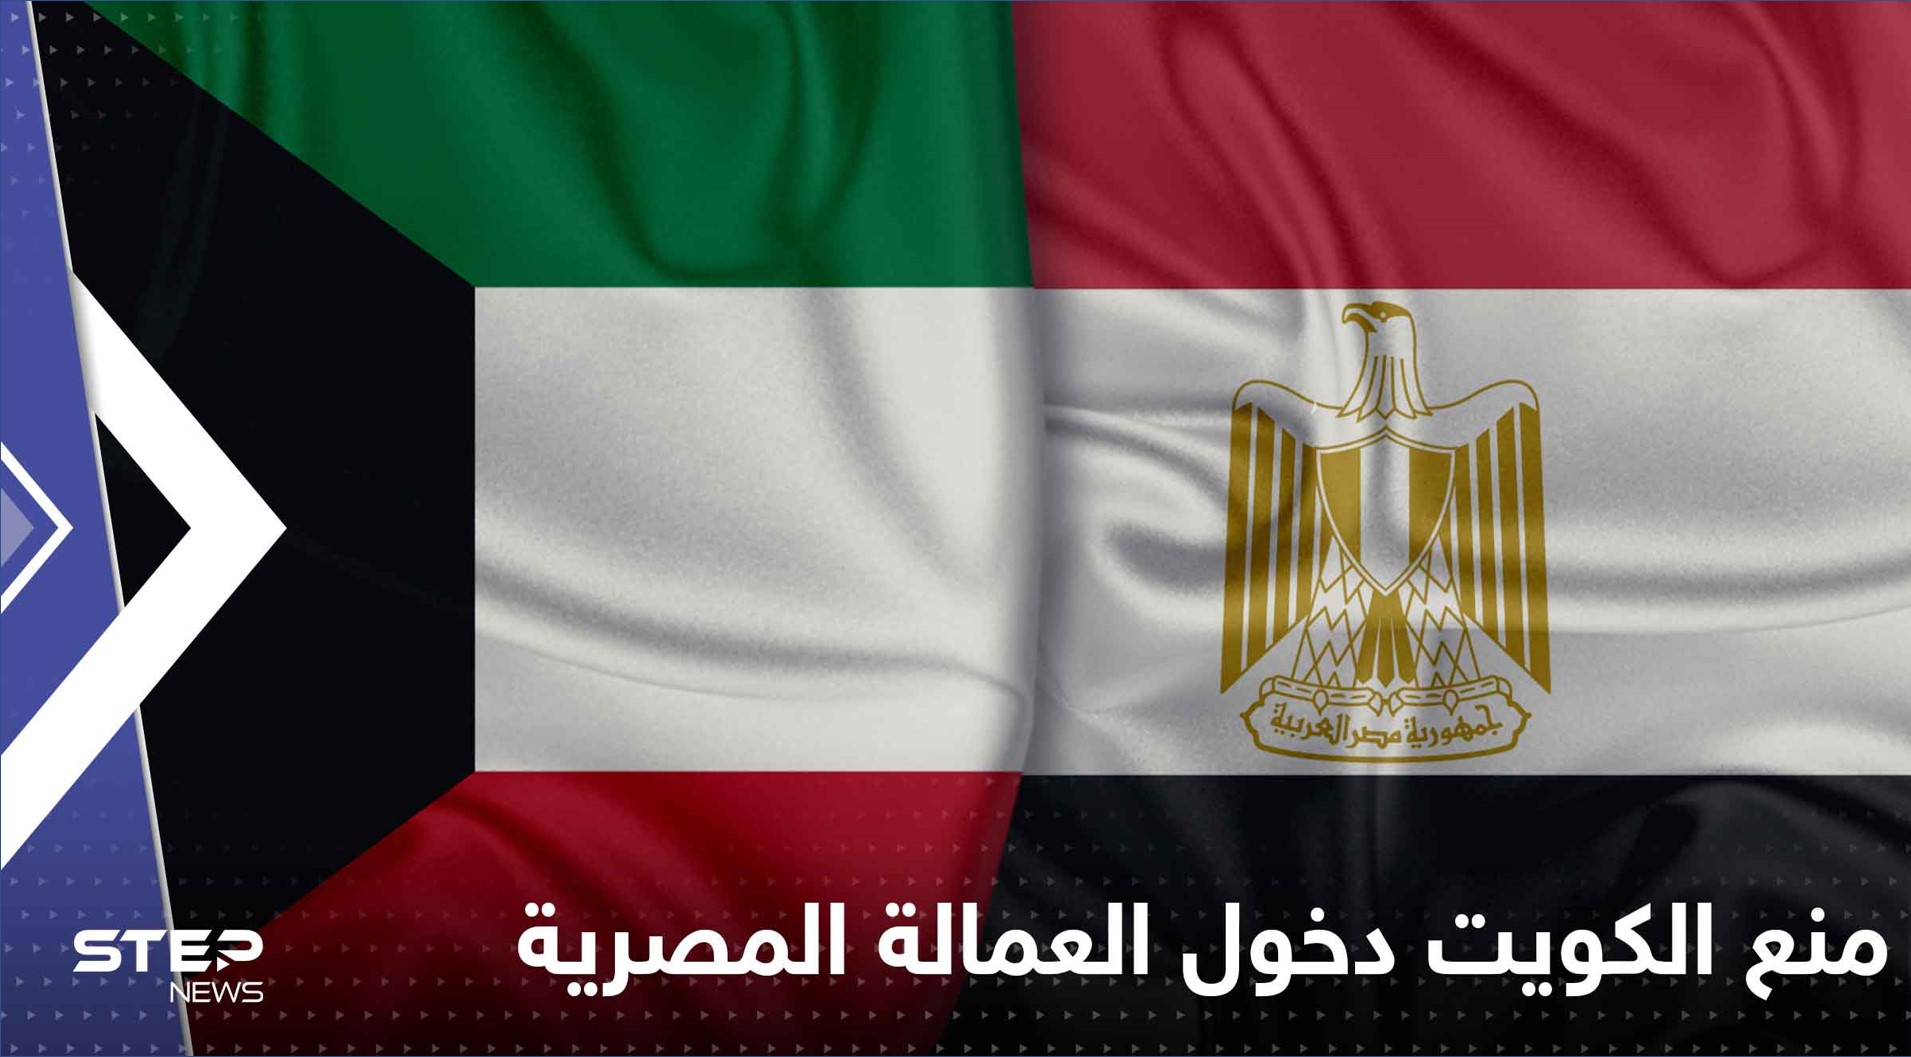 قرار منع العمالة المصرية من دخول الكويت وأول رد مصري على القرار